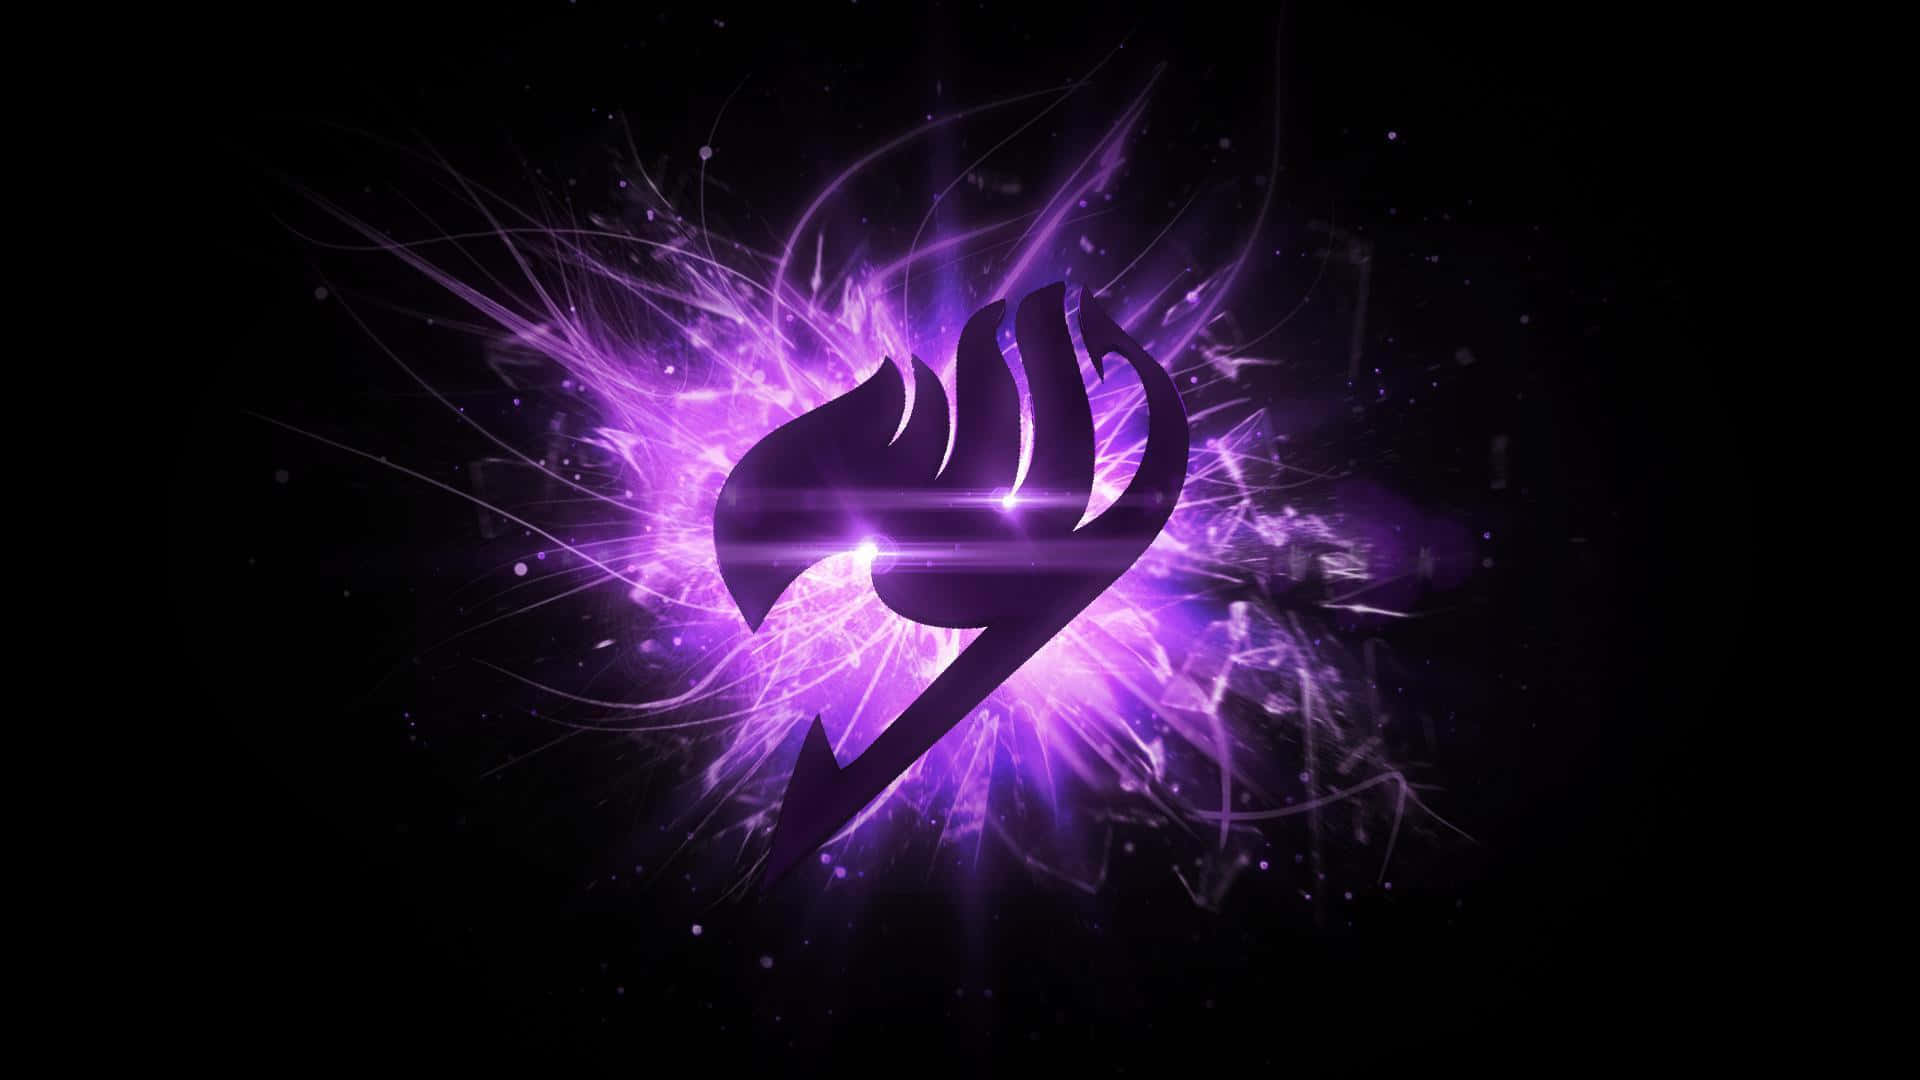 Logoet for Fairy Tail symboliserer Magi og Eventyr. Wallpaper